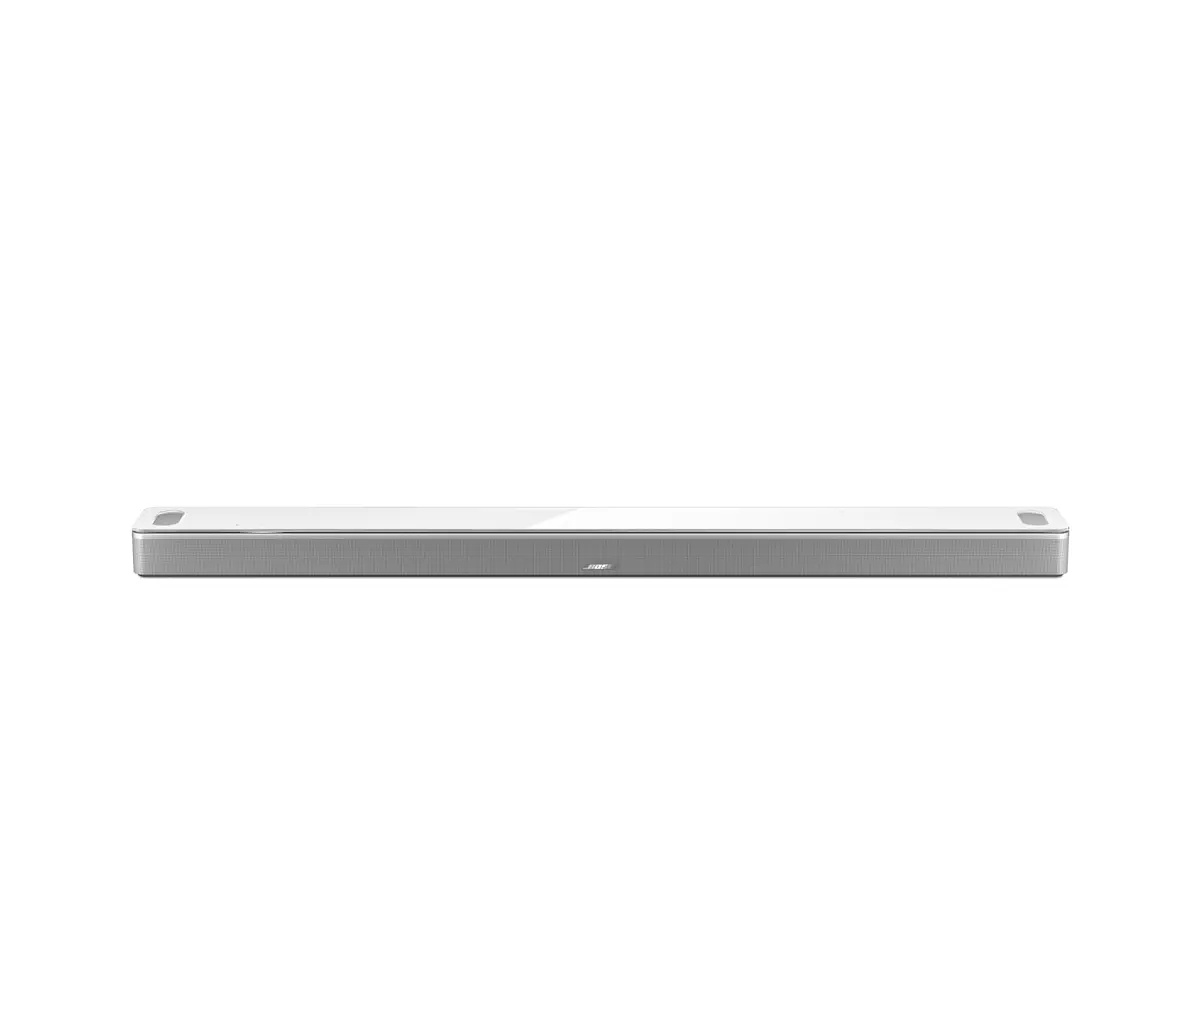 Bose 2x Smart Soundbar 900, White #863350-1200 2